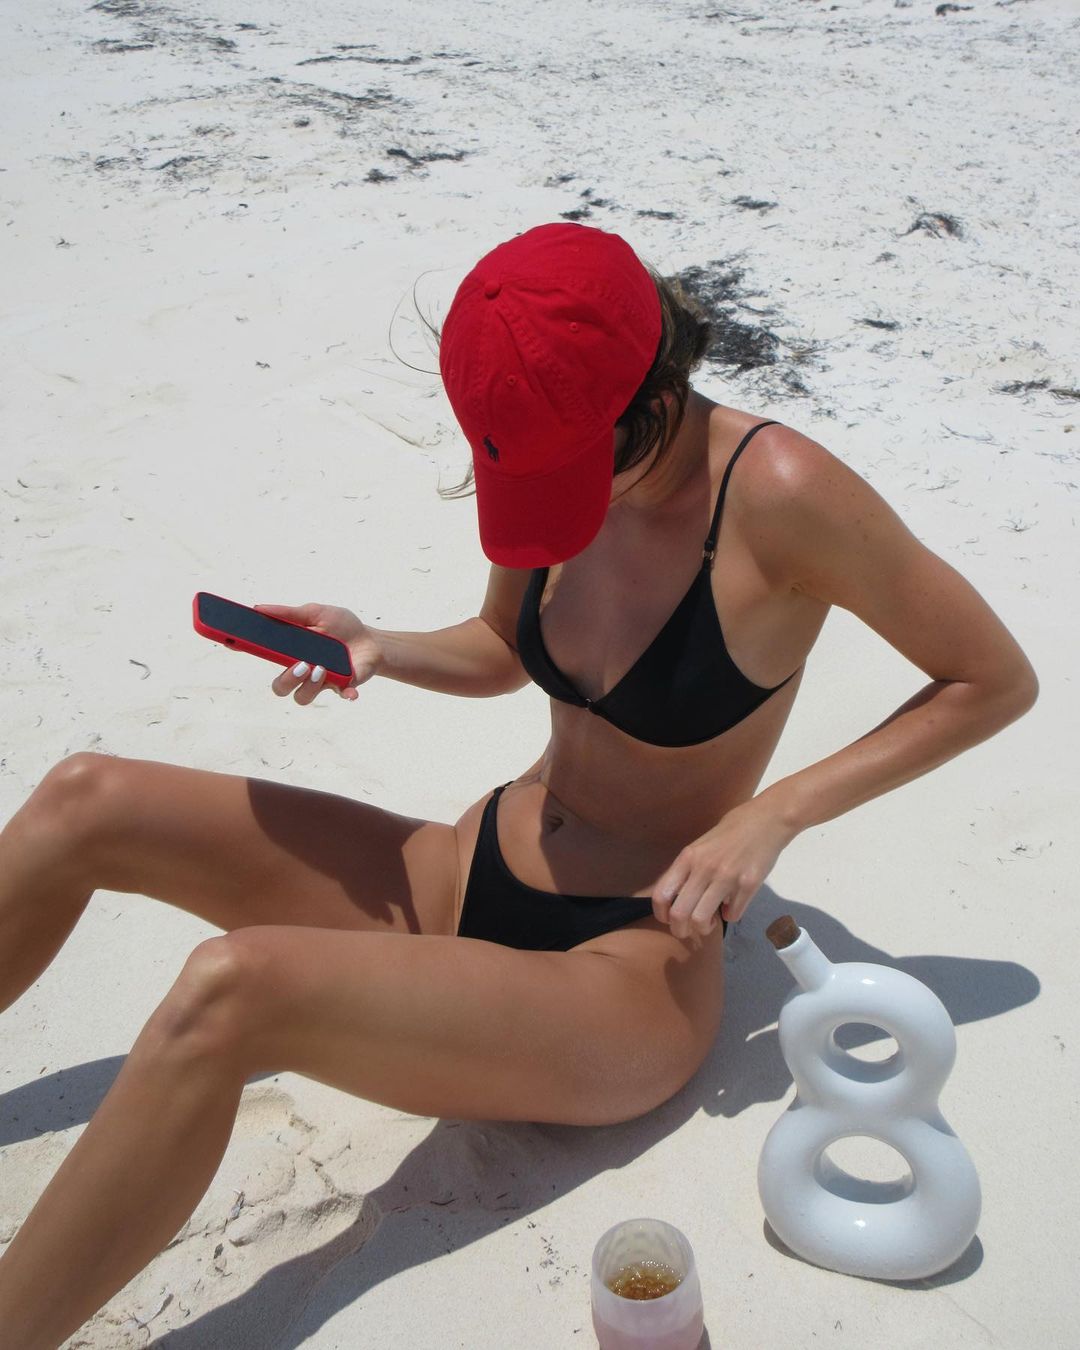 Photo n°4 : La vie est une plage pour Kendall Jenner!